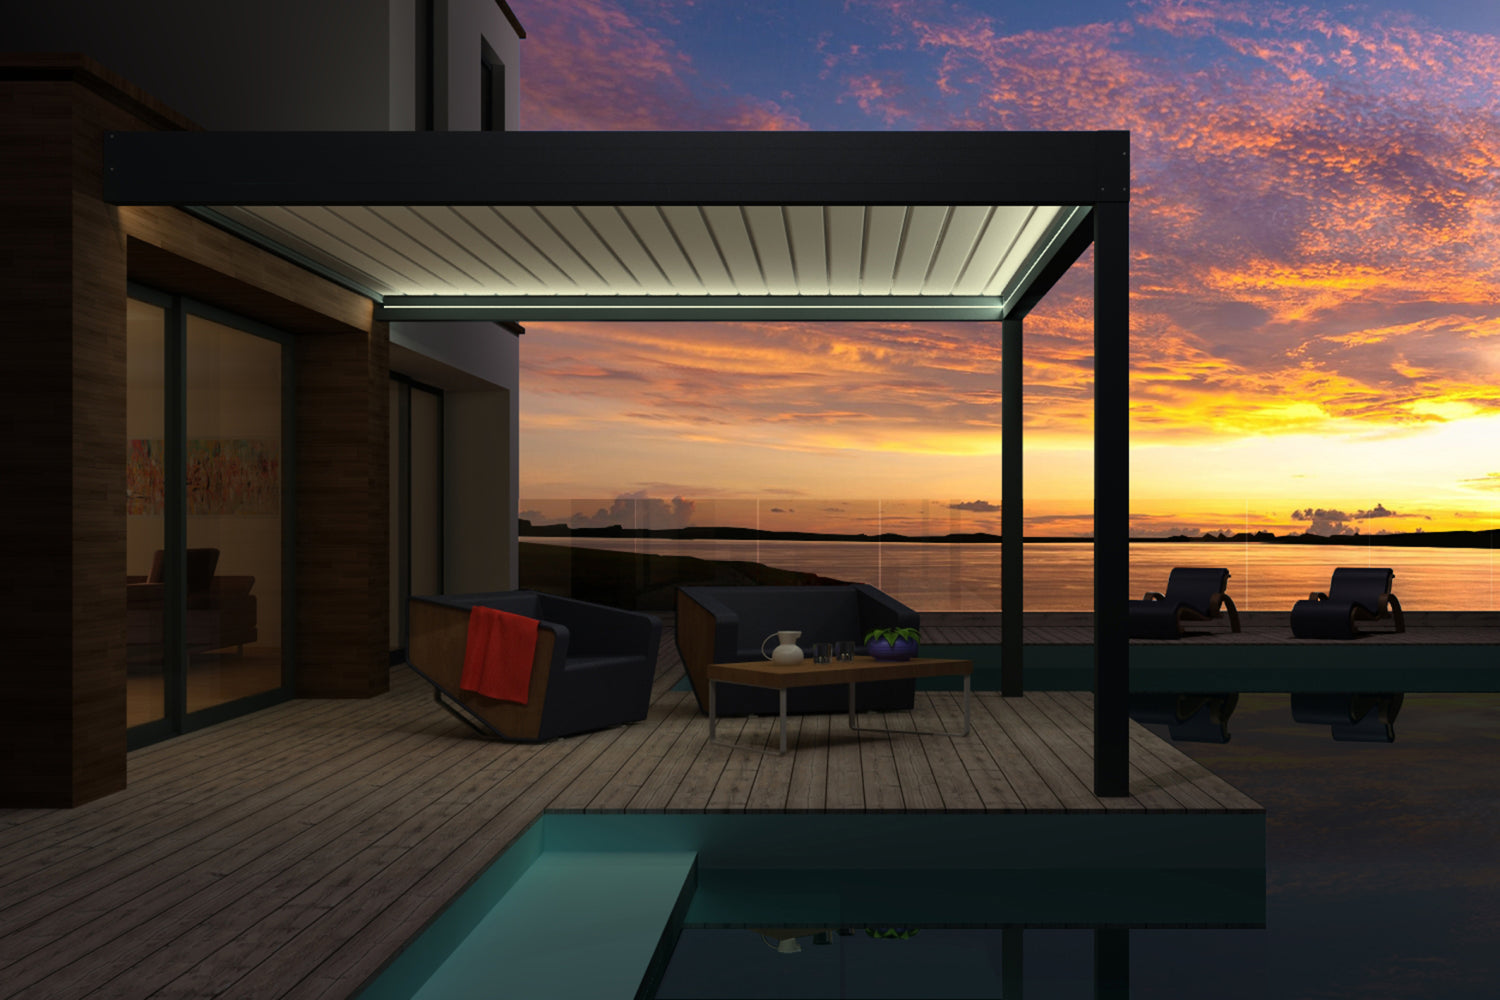 pergola bioclimatique kit led lames fermées terrasse bois maison design piscine coucher soleil